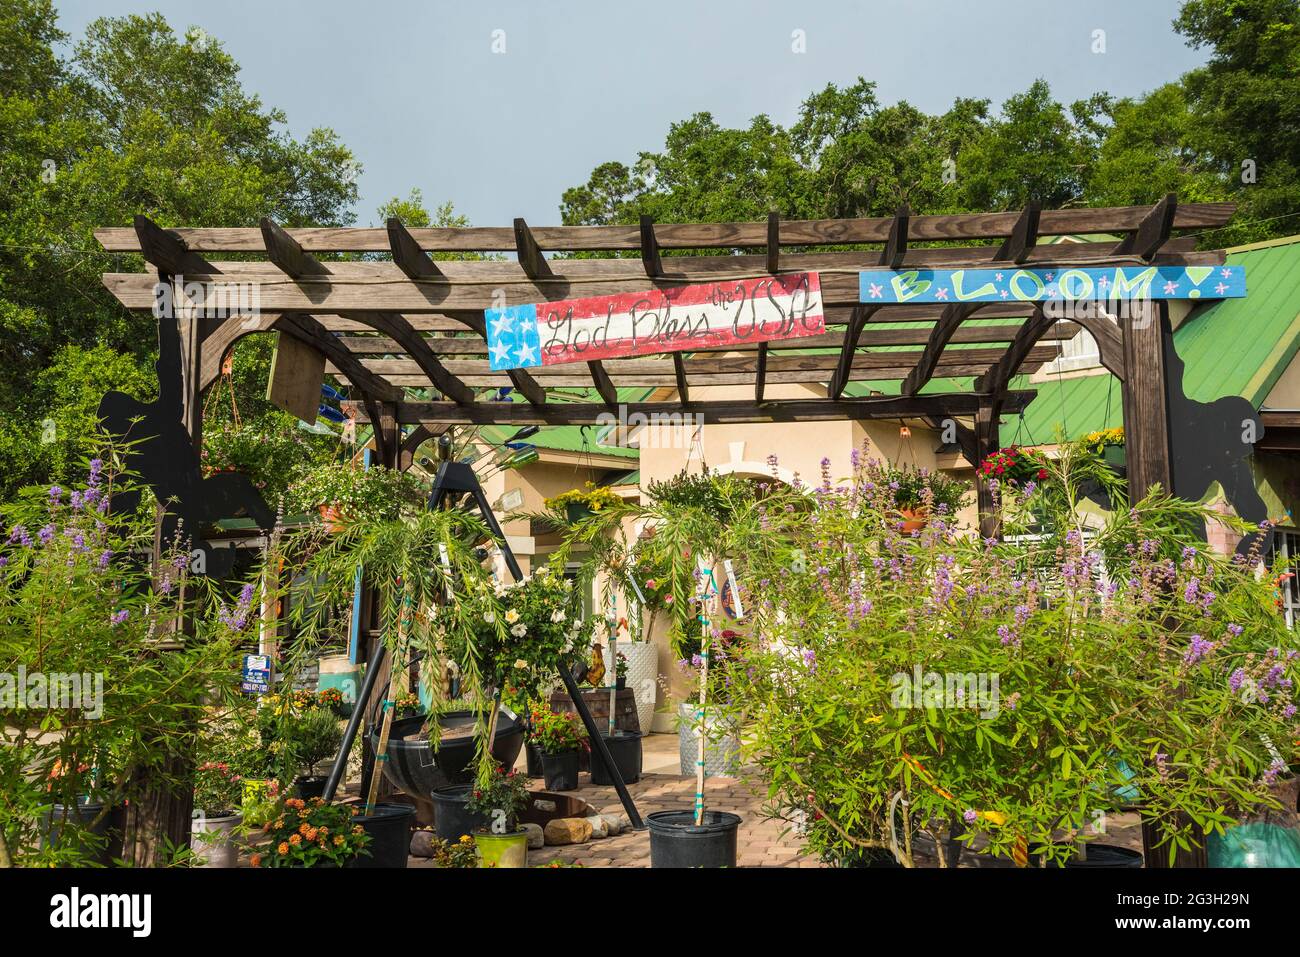 La pépinière Green House est la « Plant Disneyland » selon son propriétaire qui a rempli les 19 hectares de jardin et de pépinière de fantaisie et de drôle Banque D'Images